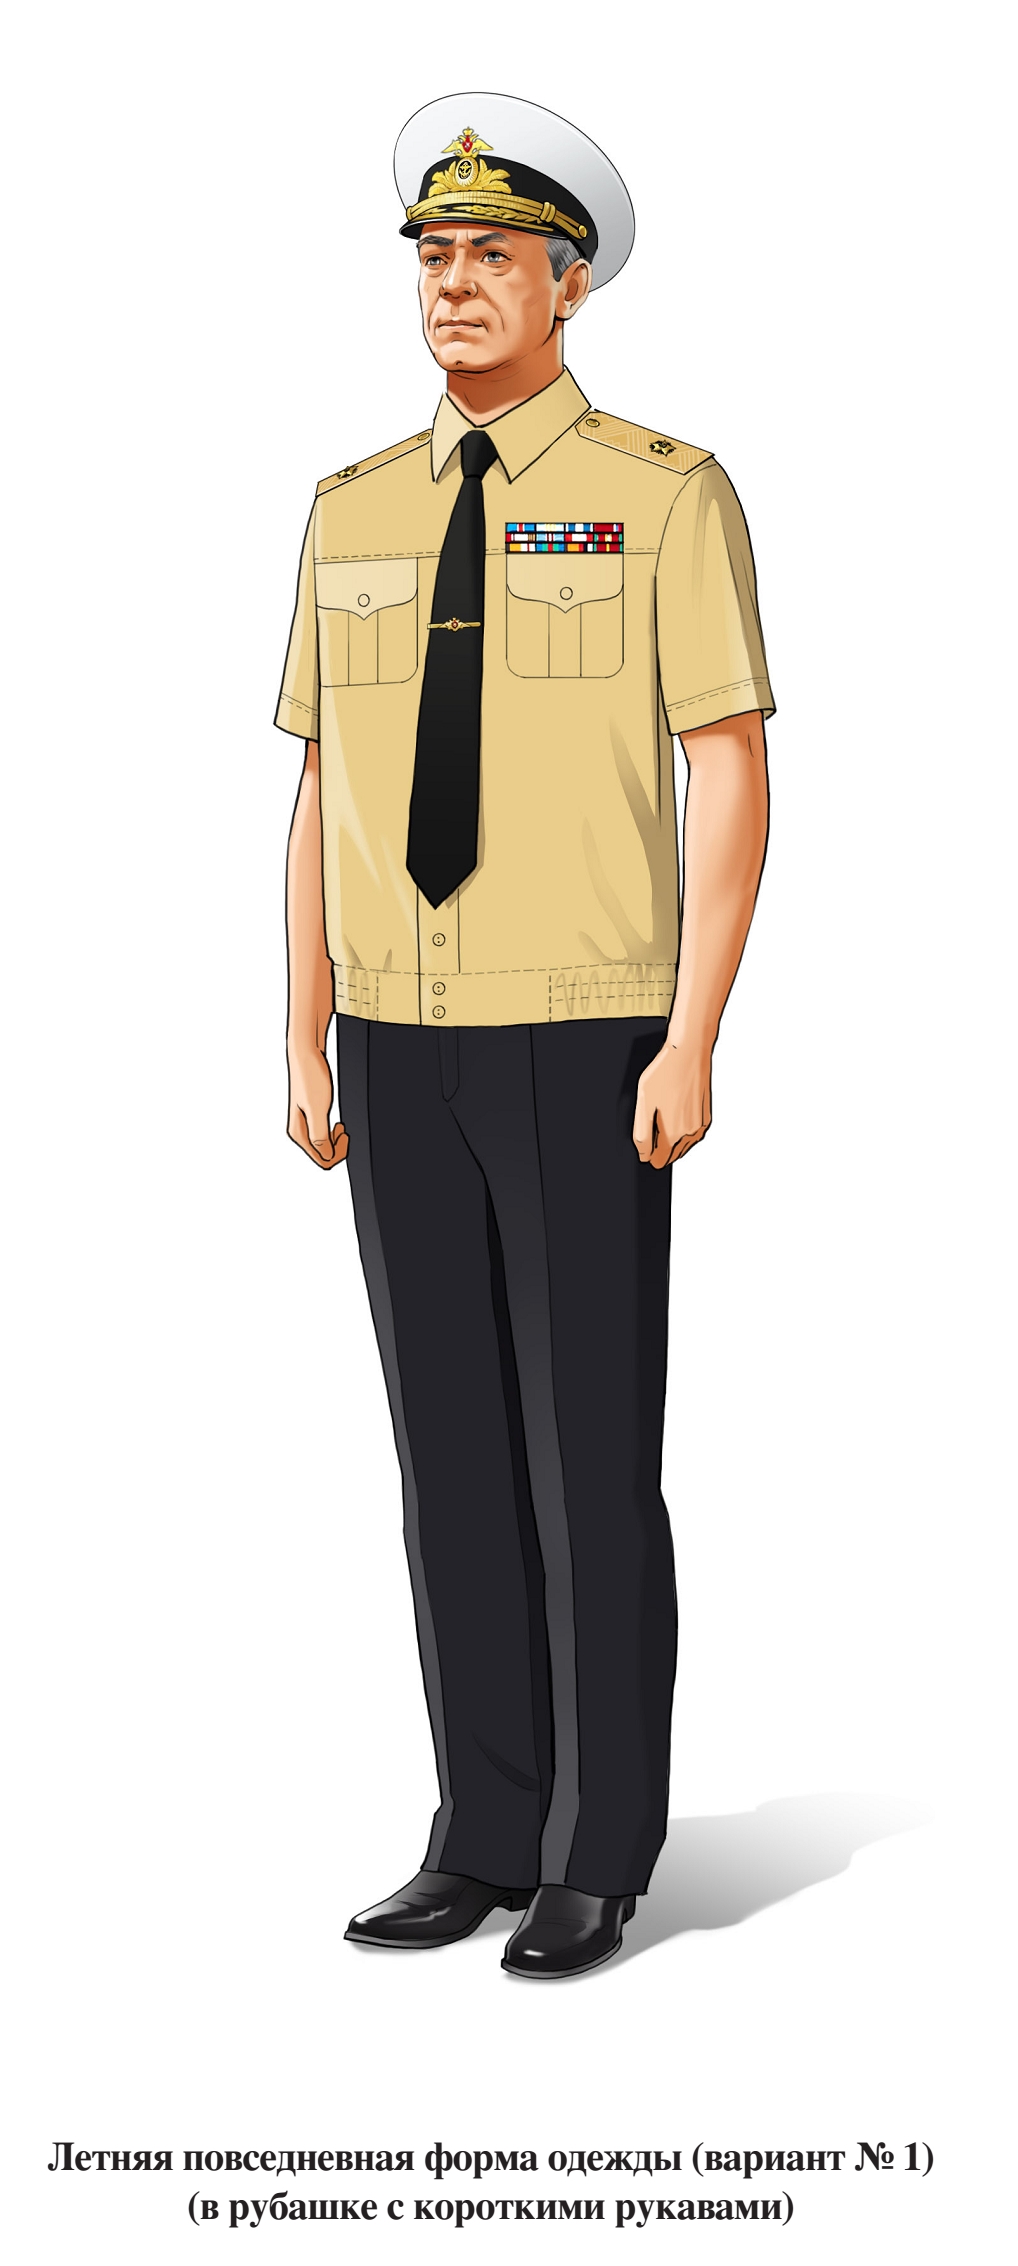 Адмирал, летняя повседневная форма ВМФ, в рубашке с коротким рукавом